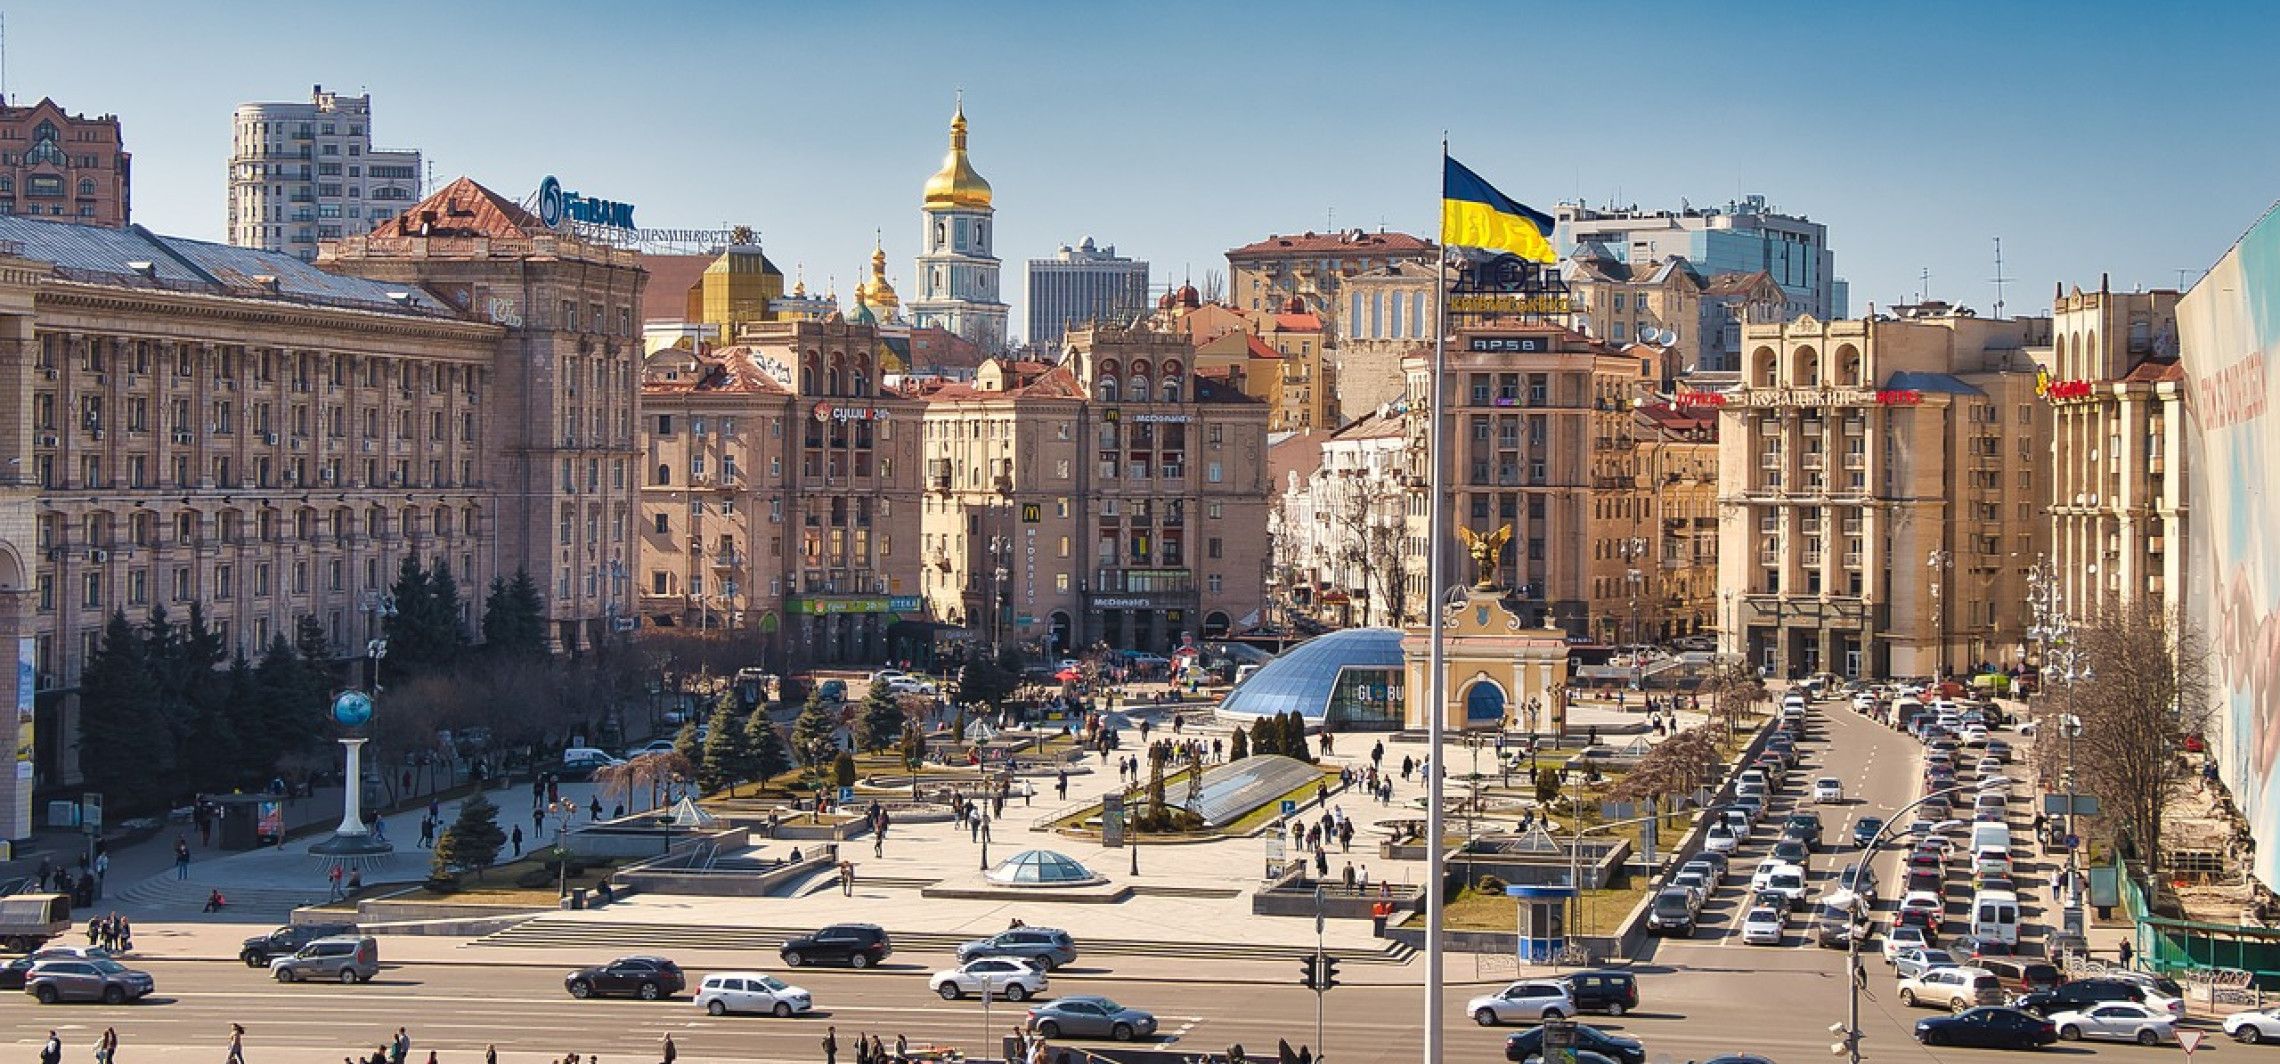 Region - Jak założyć działalność gospodarczą na Ukrainie